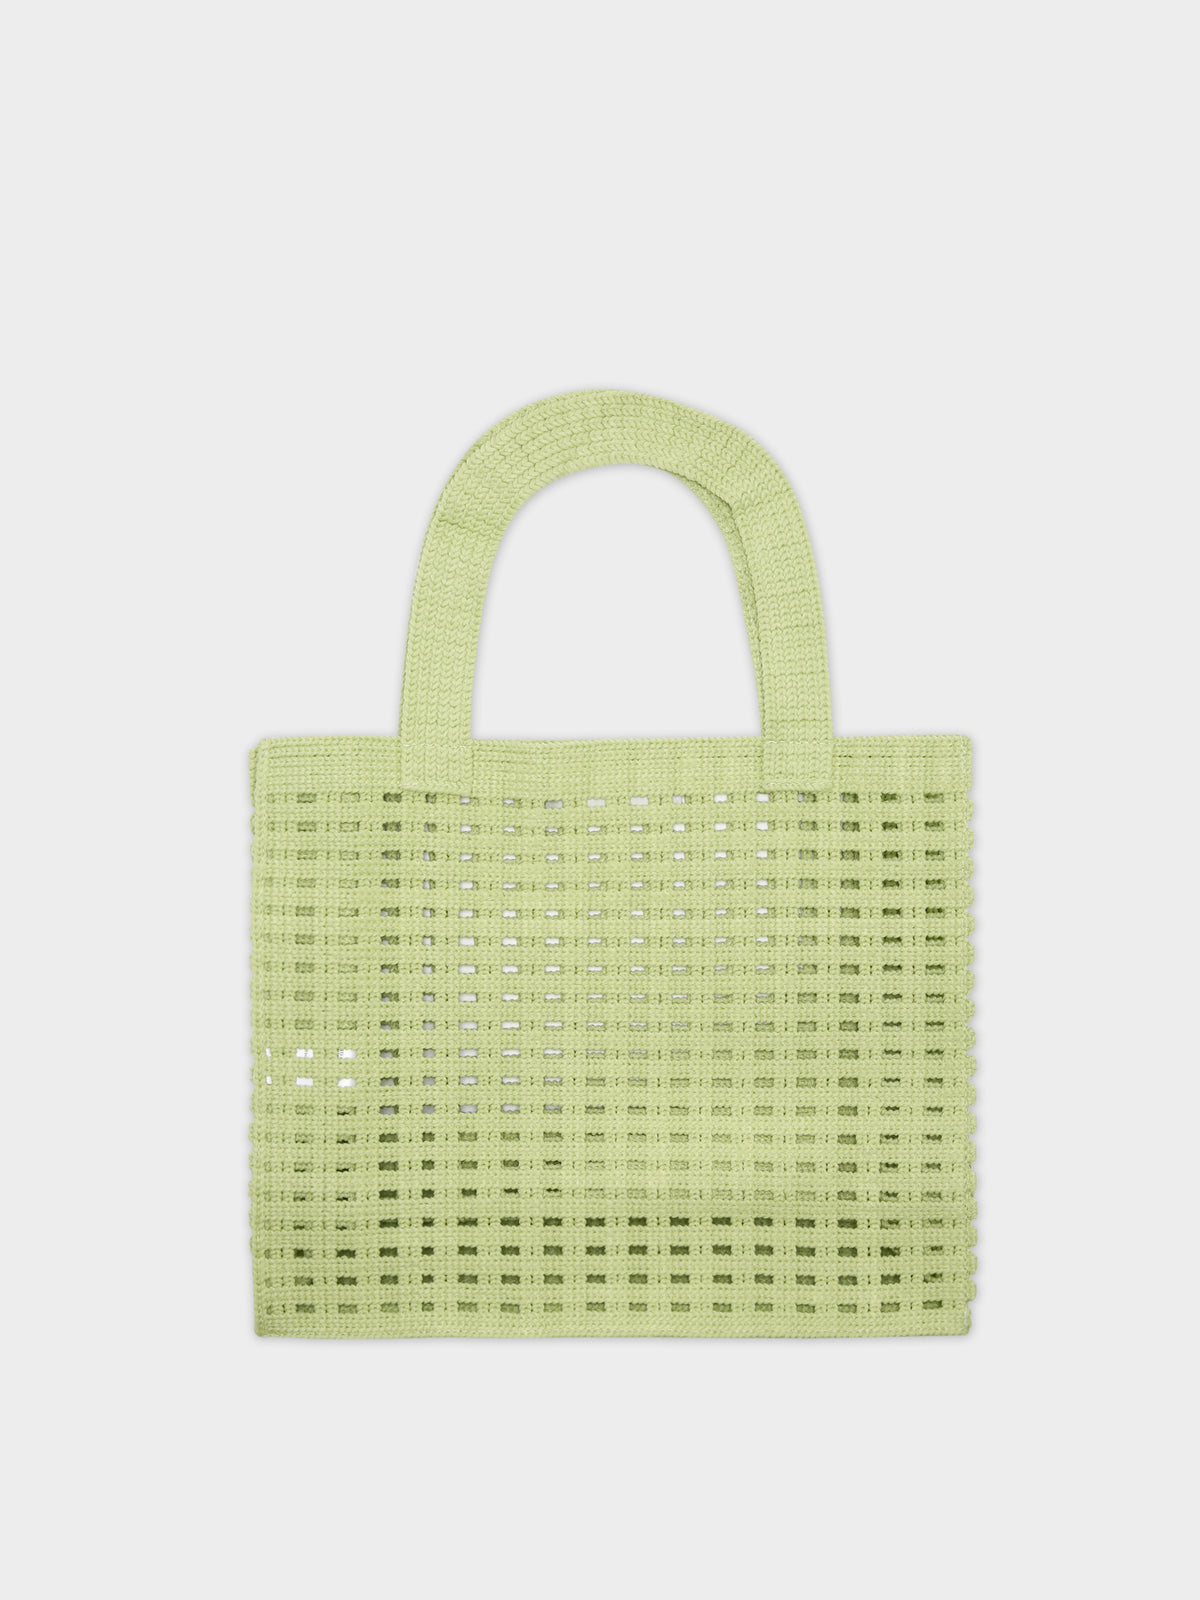 Crochet Bag in Lime